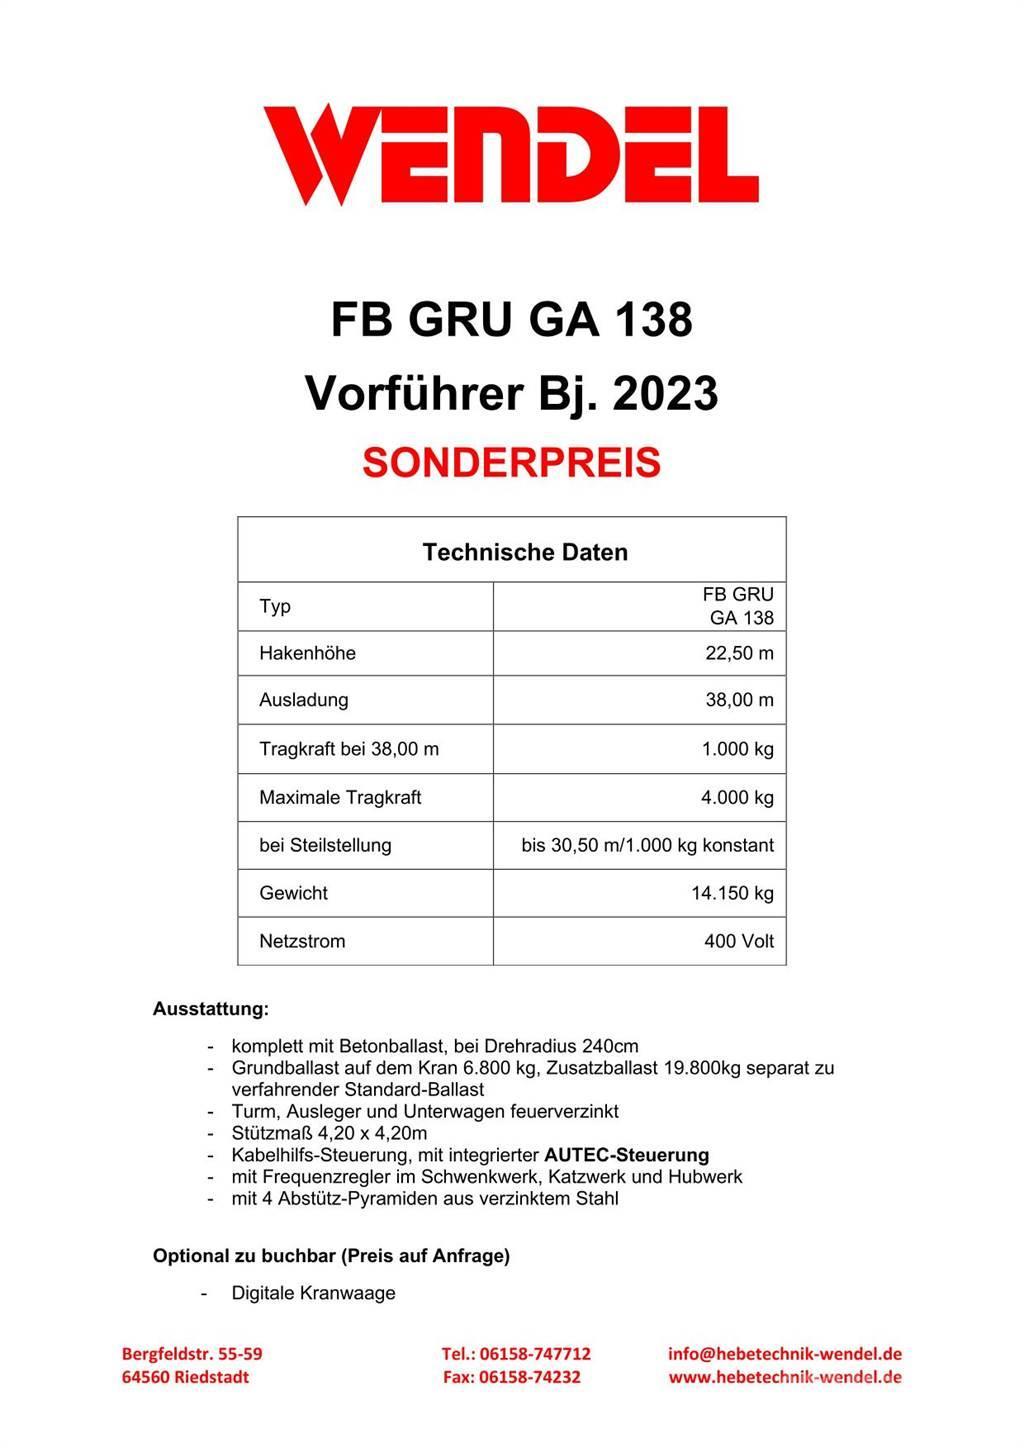 FB GRU Hochbaukran GA 138 Tornkraanad